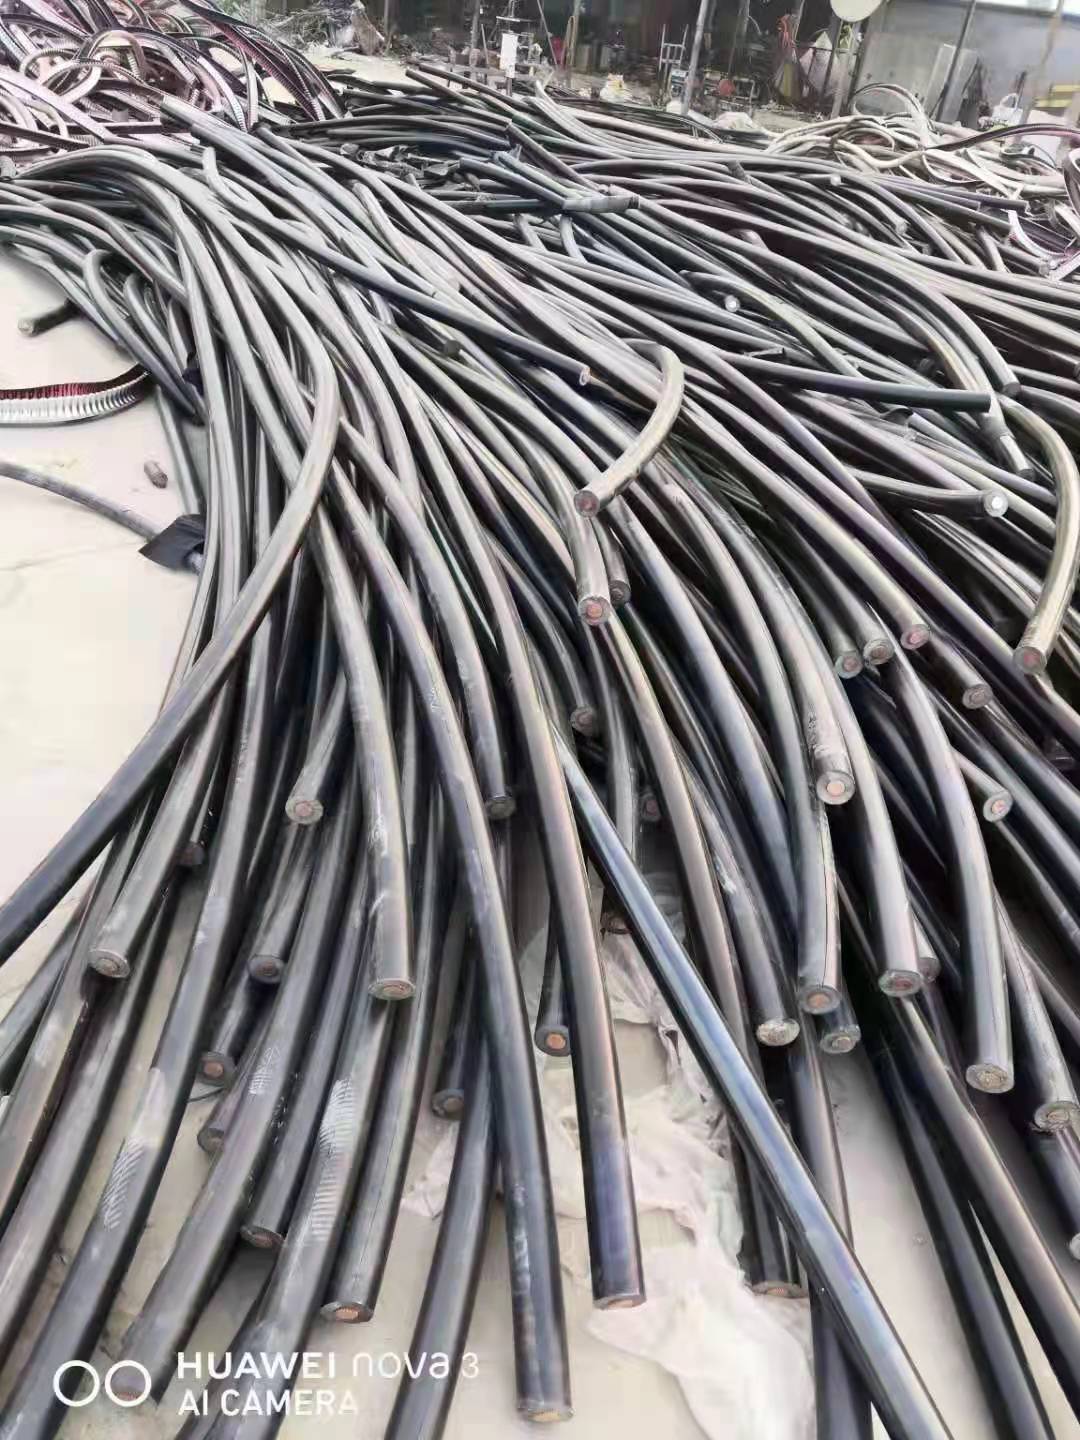 北京西城收购工业物资/铜铝电缆/变压器